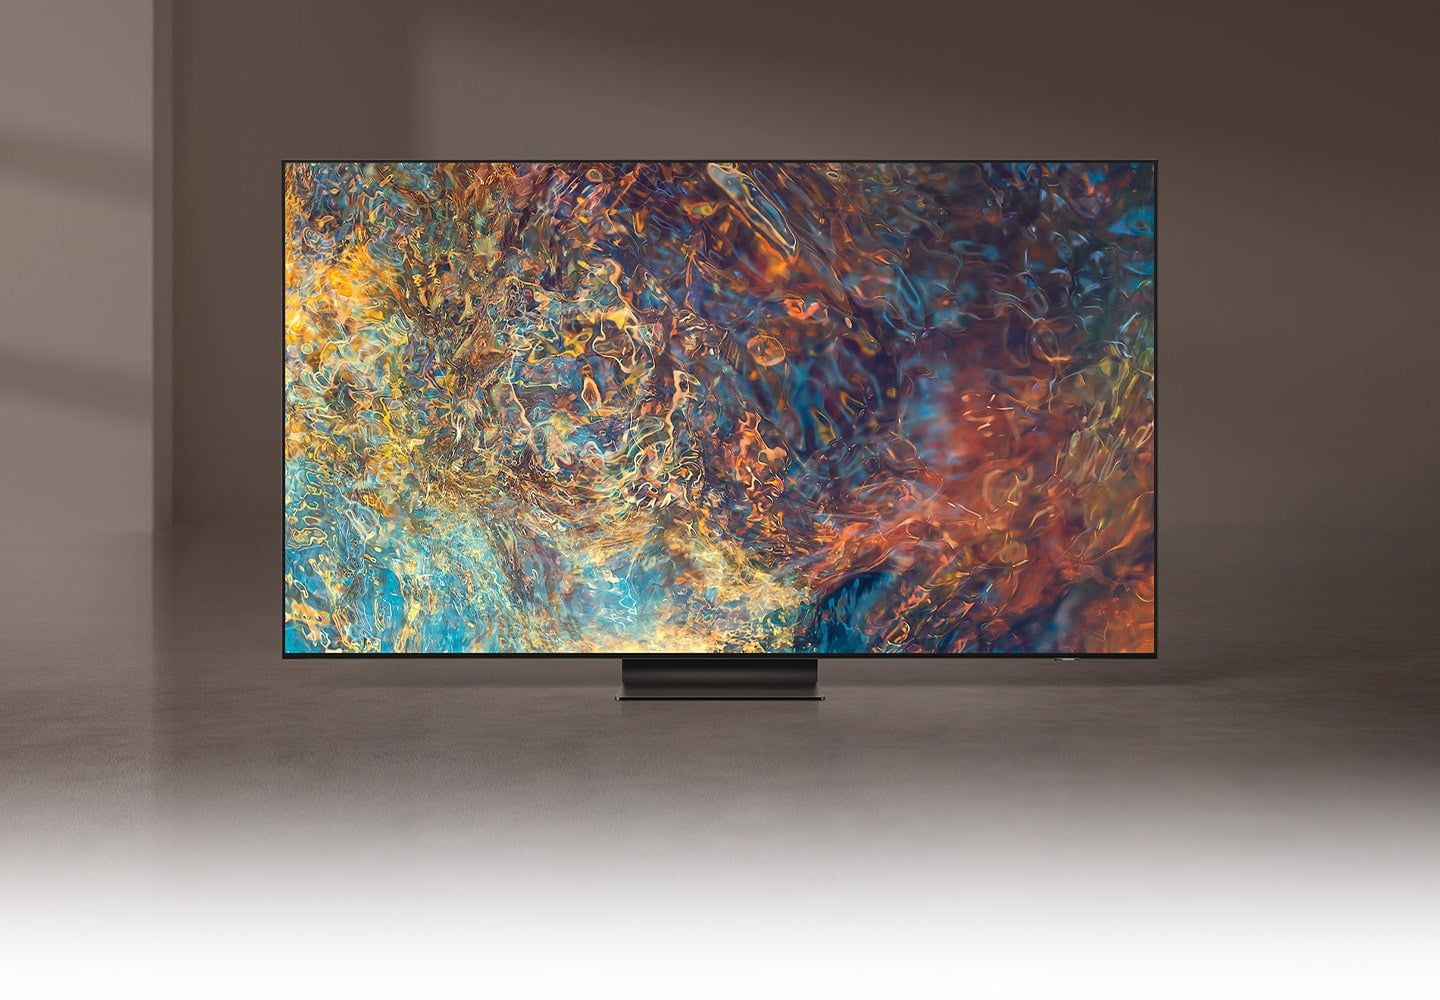 Zobacz jak prezentuje się telewizor Samsung 4K QN95A| intensywniejszy obraz niż kiedykolwiek.